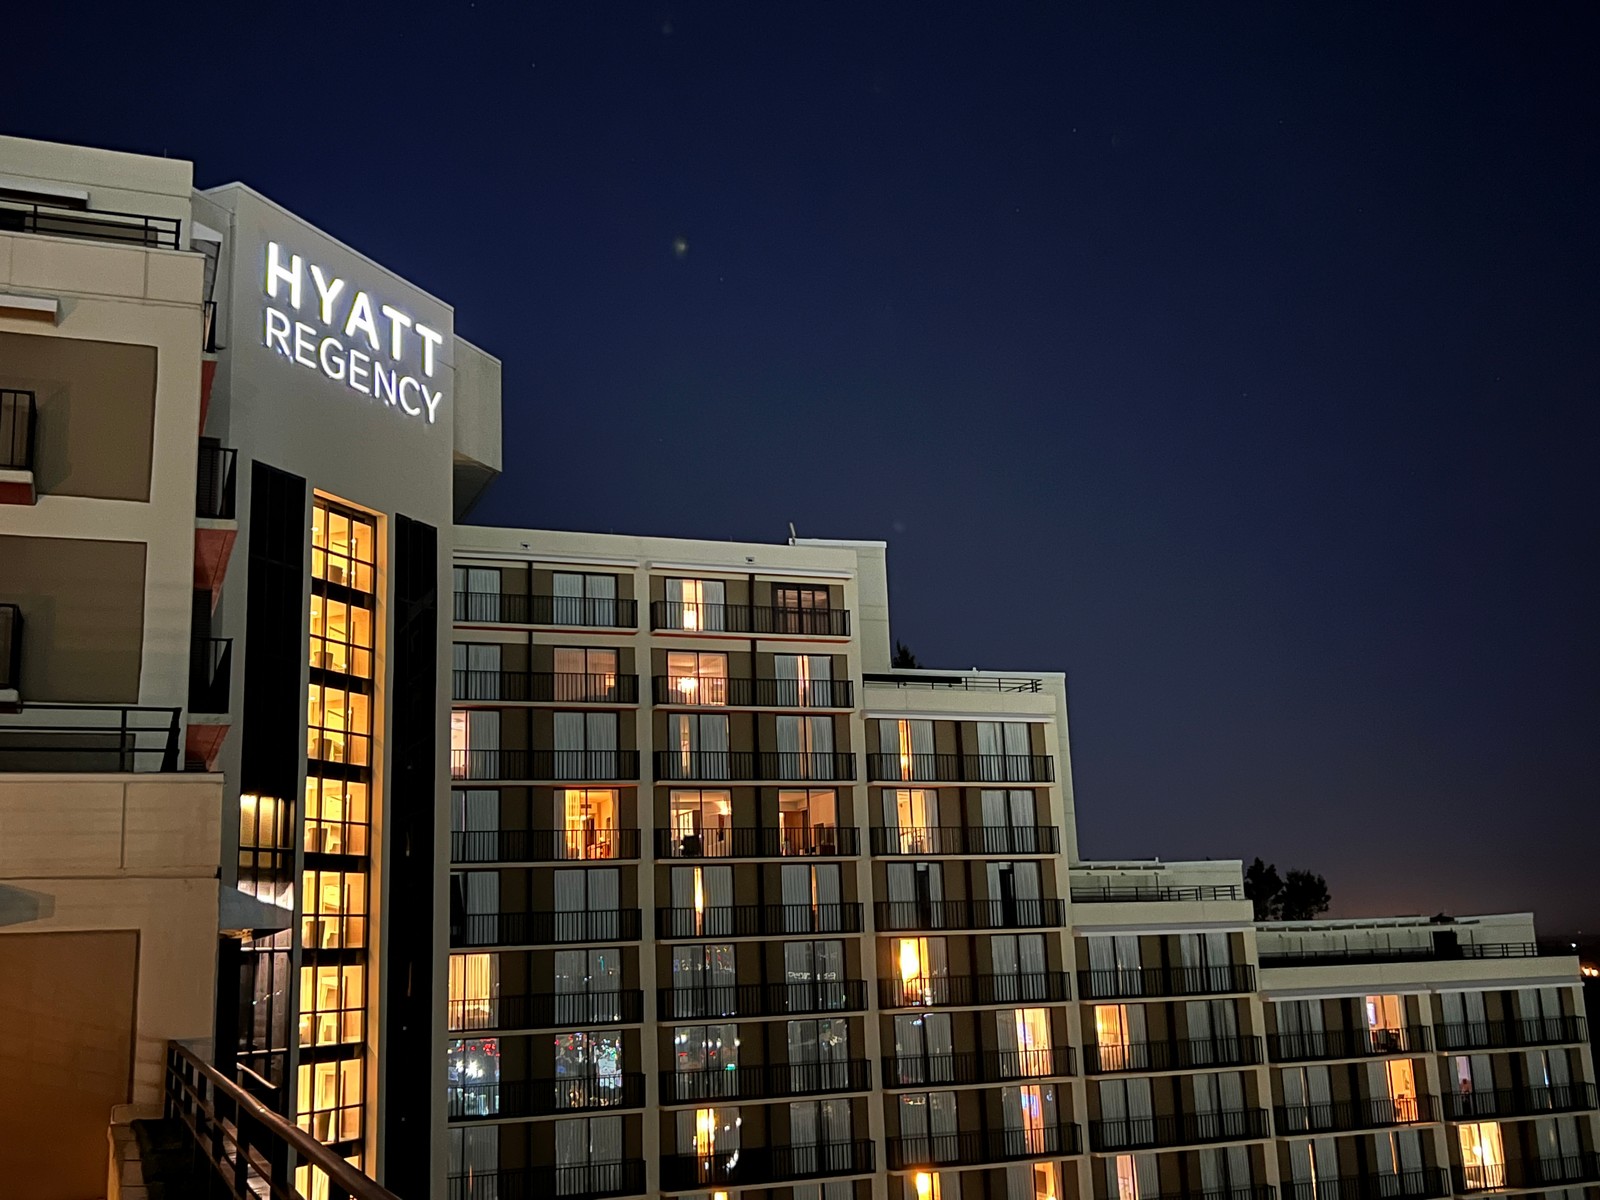 Expiring Hyatt Free Night Certificate Options